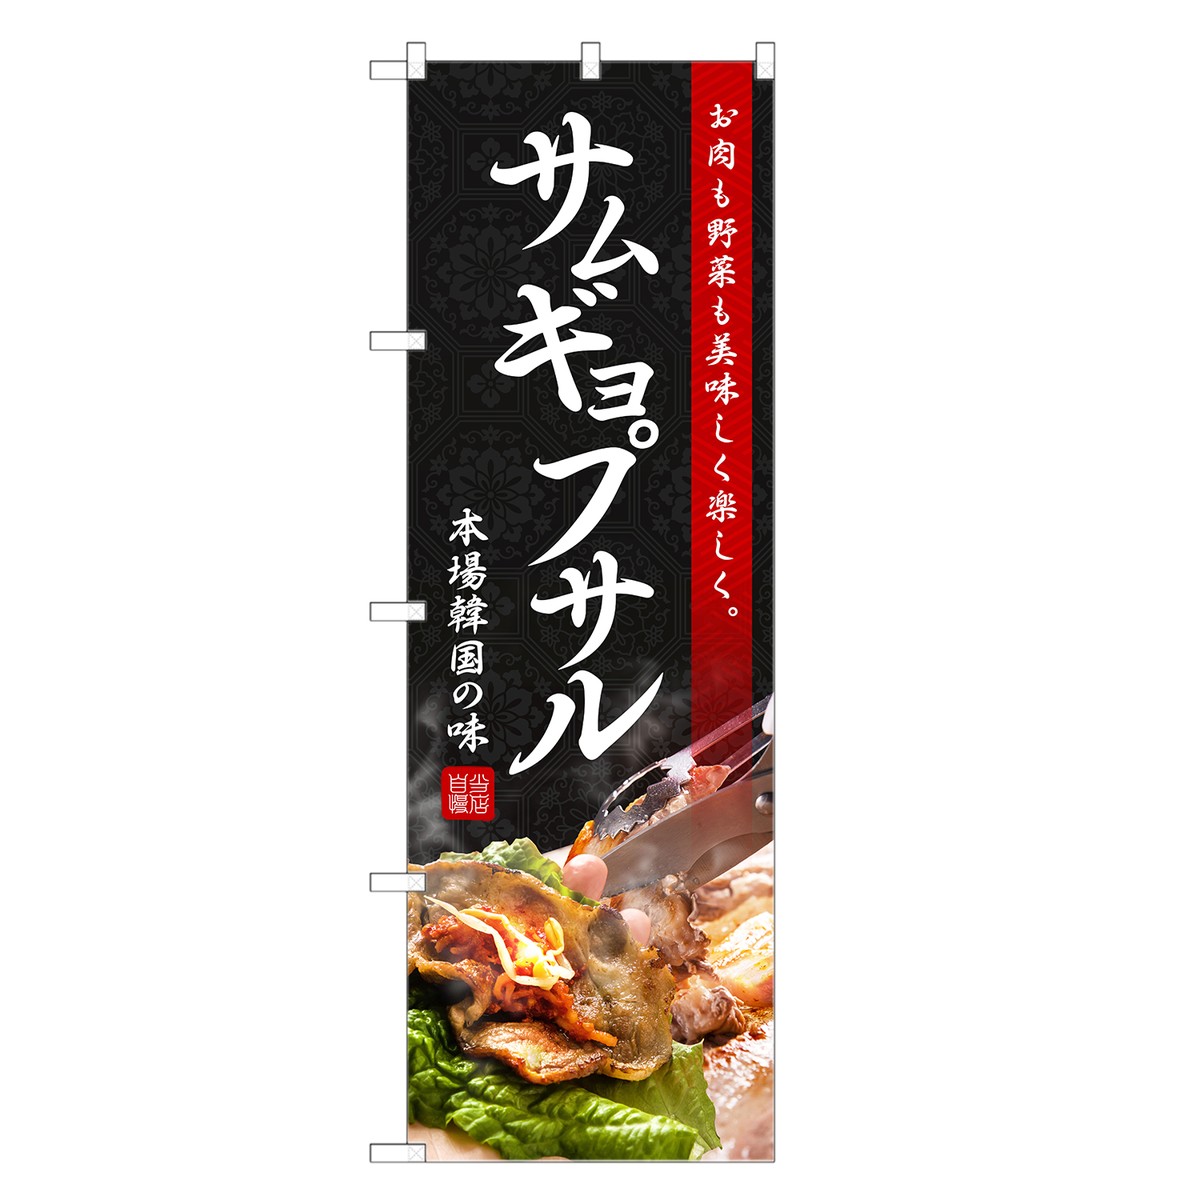 のぼり旗 サムギョプサル のぼり | 焼肉 焼き肉 やきにく 韓国料理 | 四方三巻縫製 F25-0021C-R